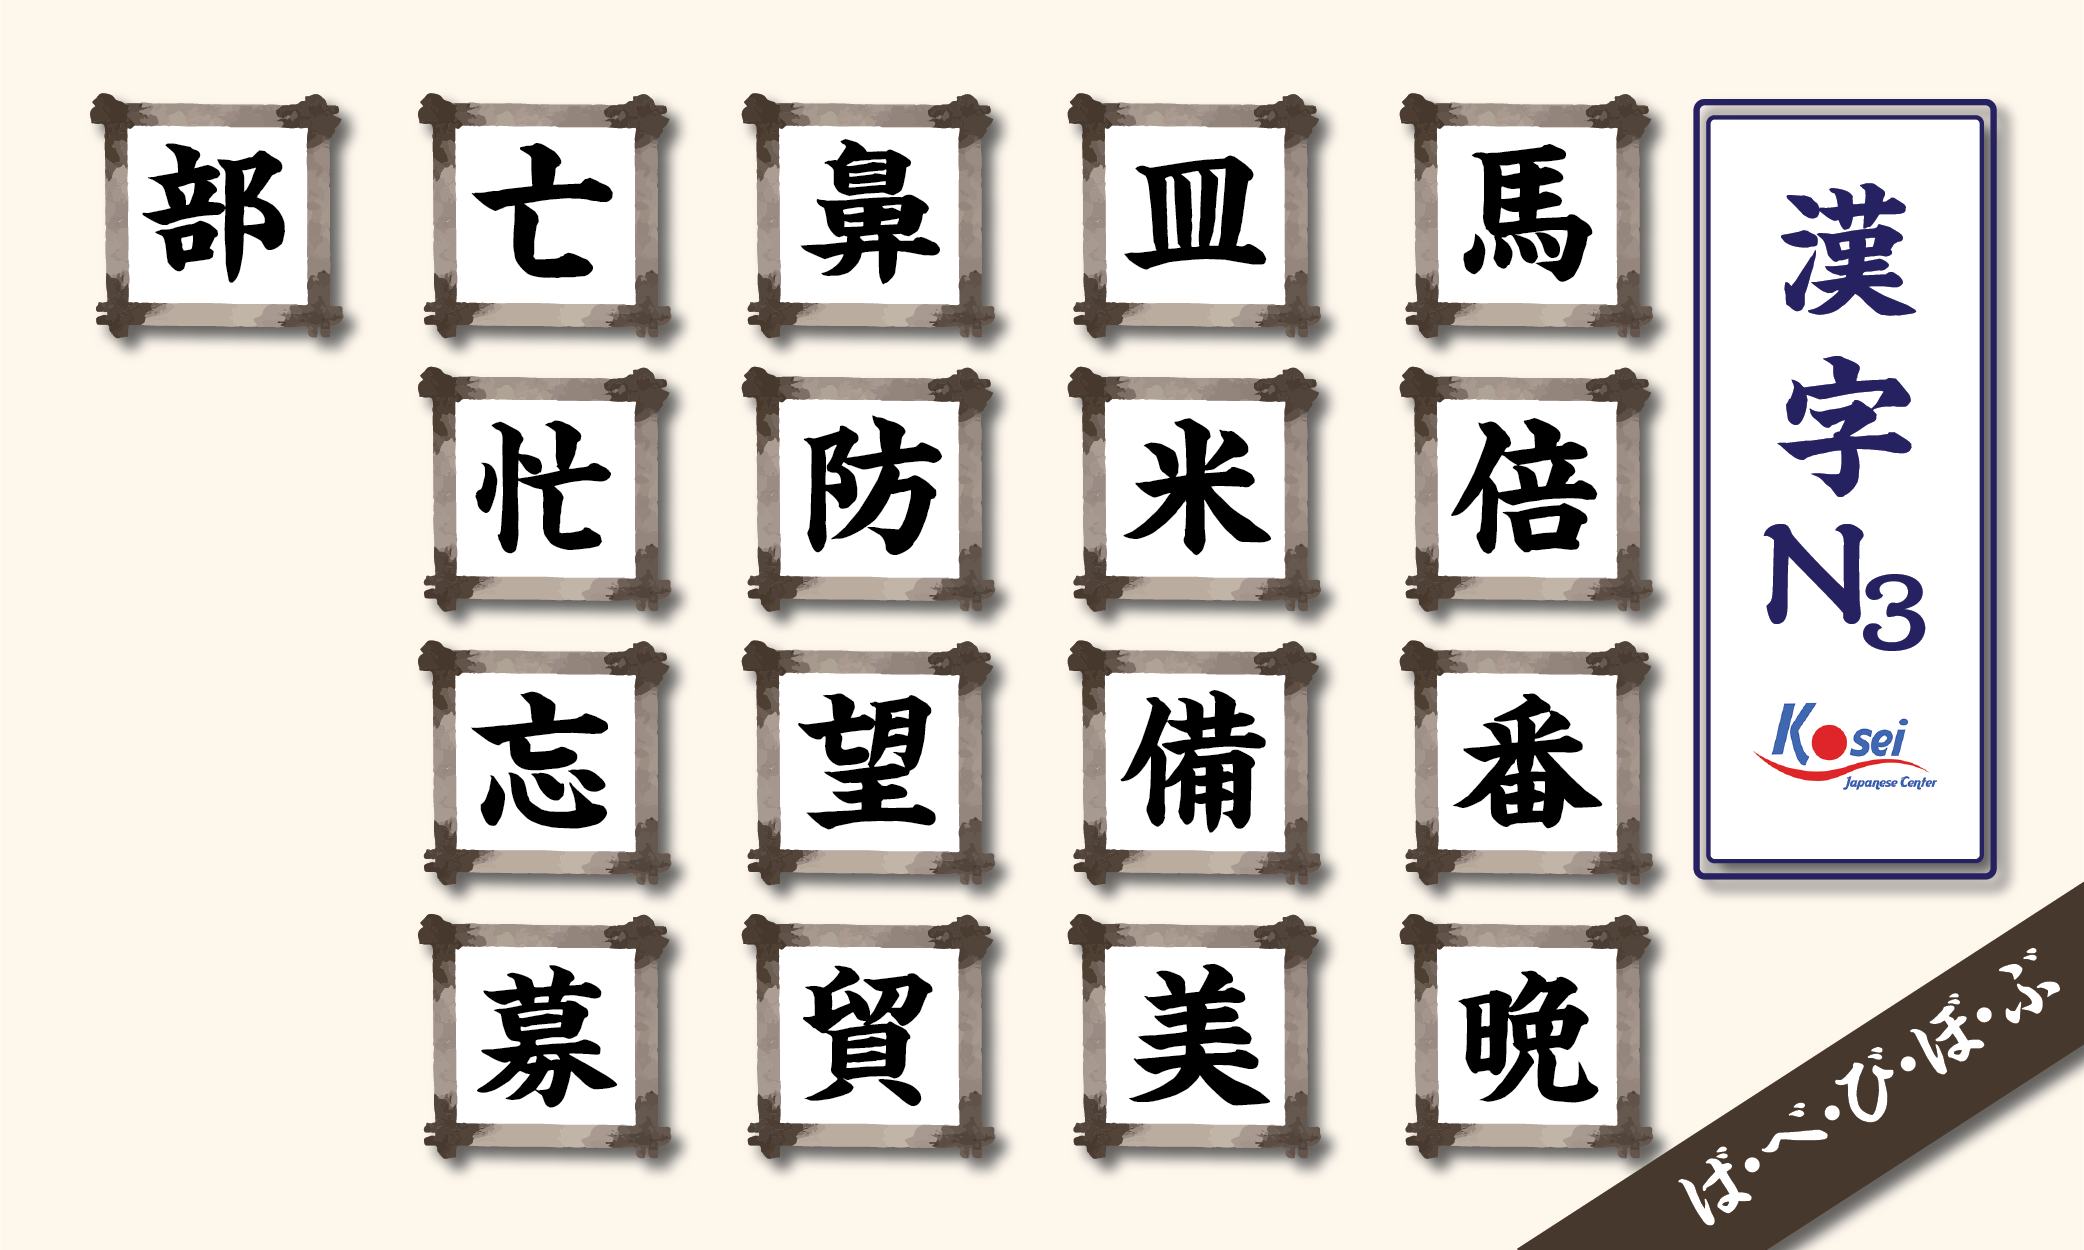 kanji n3 theo âm on hàng b